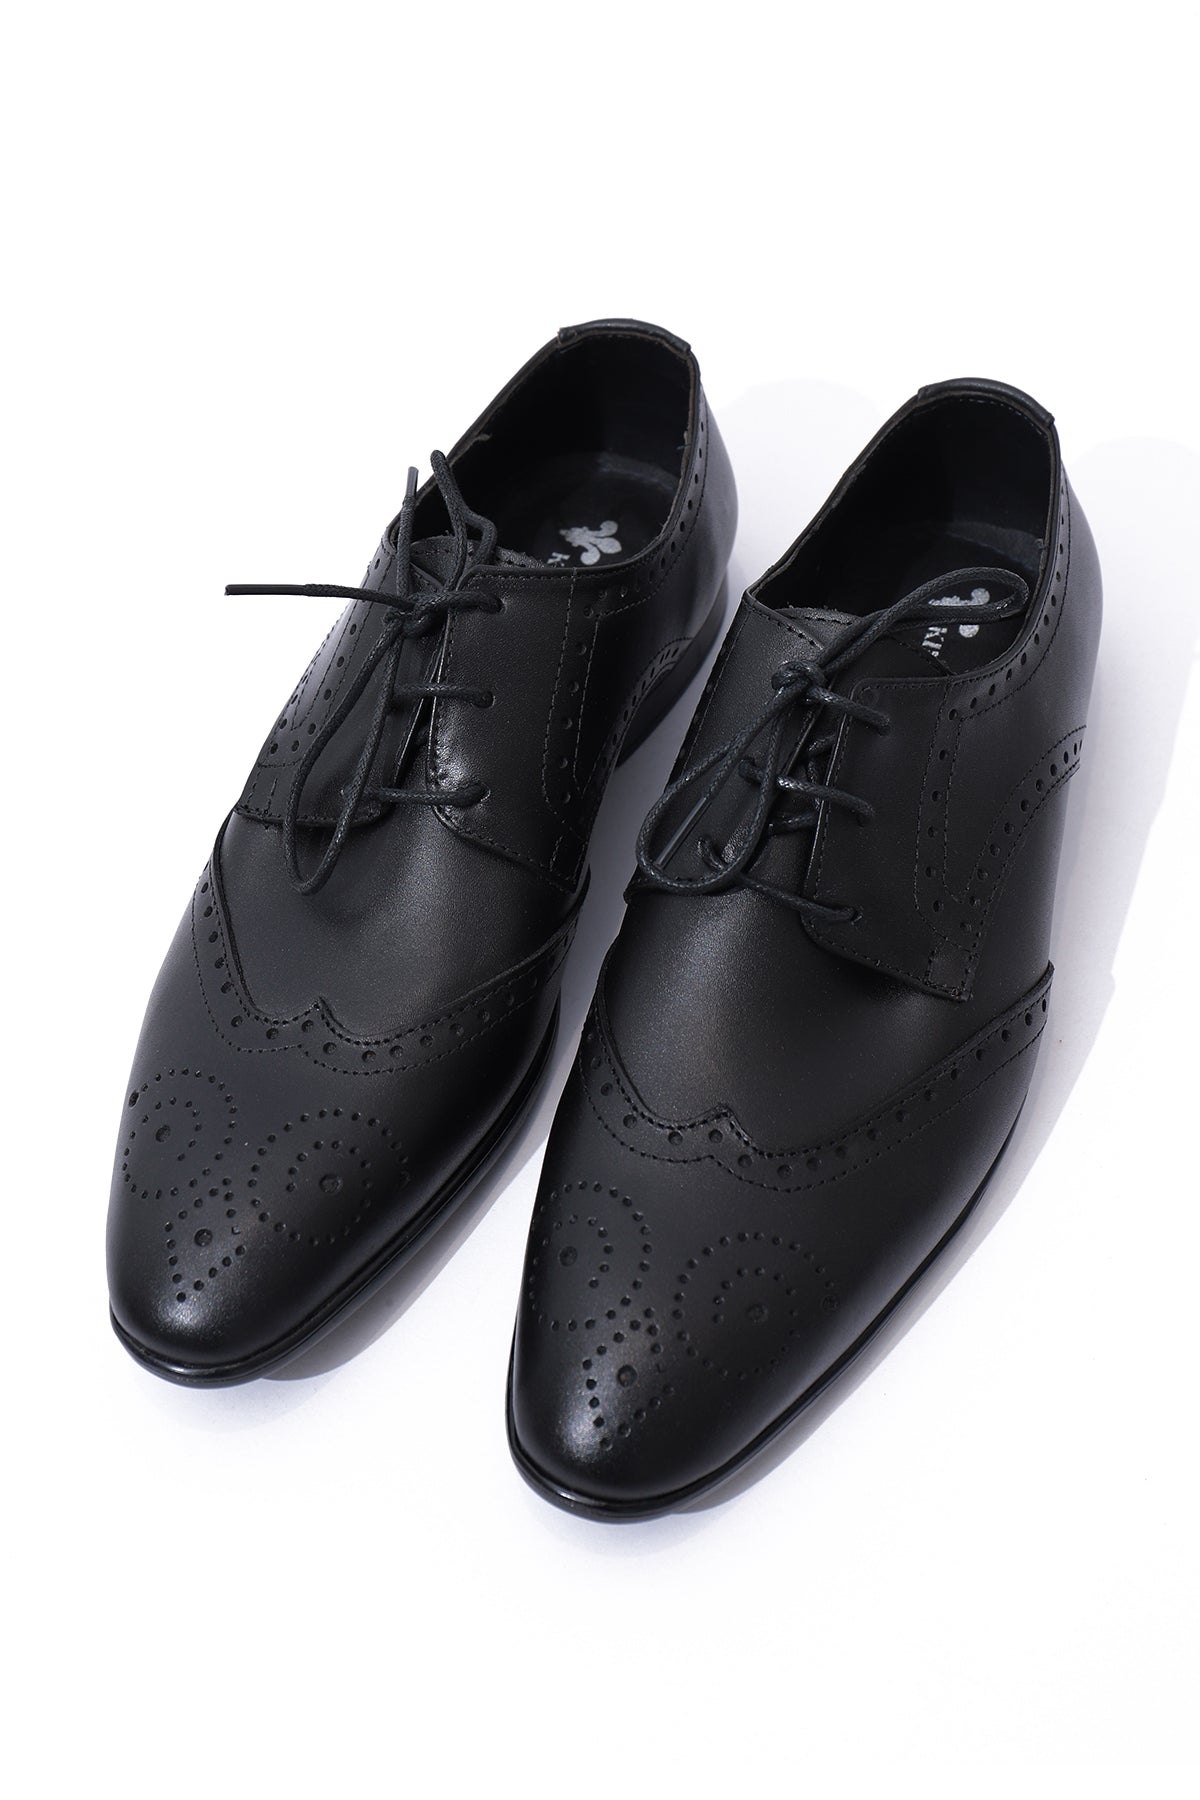 Kings Street Men's Formal Shoe